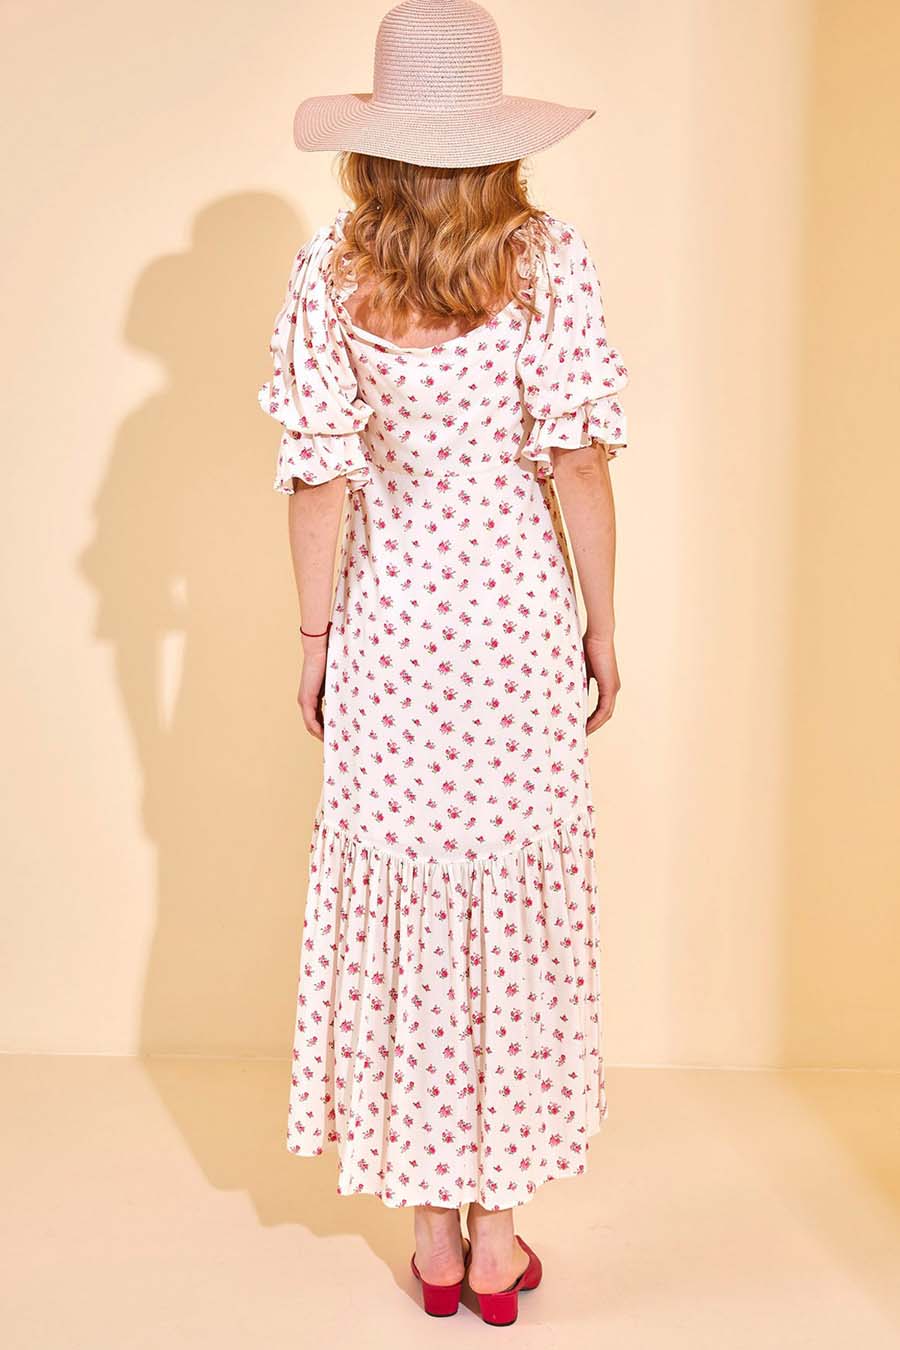 Γυναικείο φόρεμα Kaelyn, Λευκό/Ροζ 7